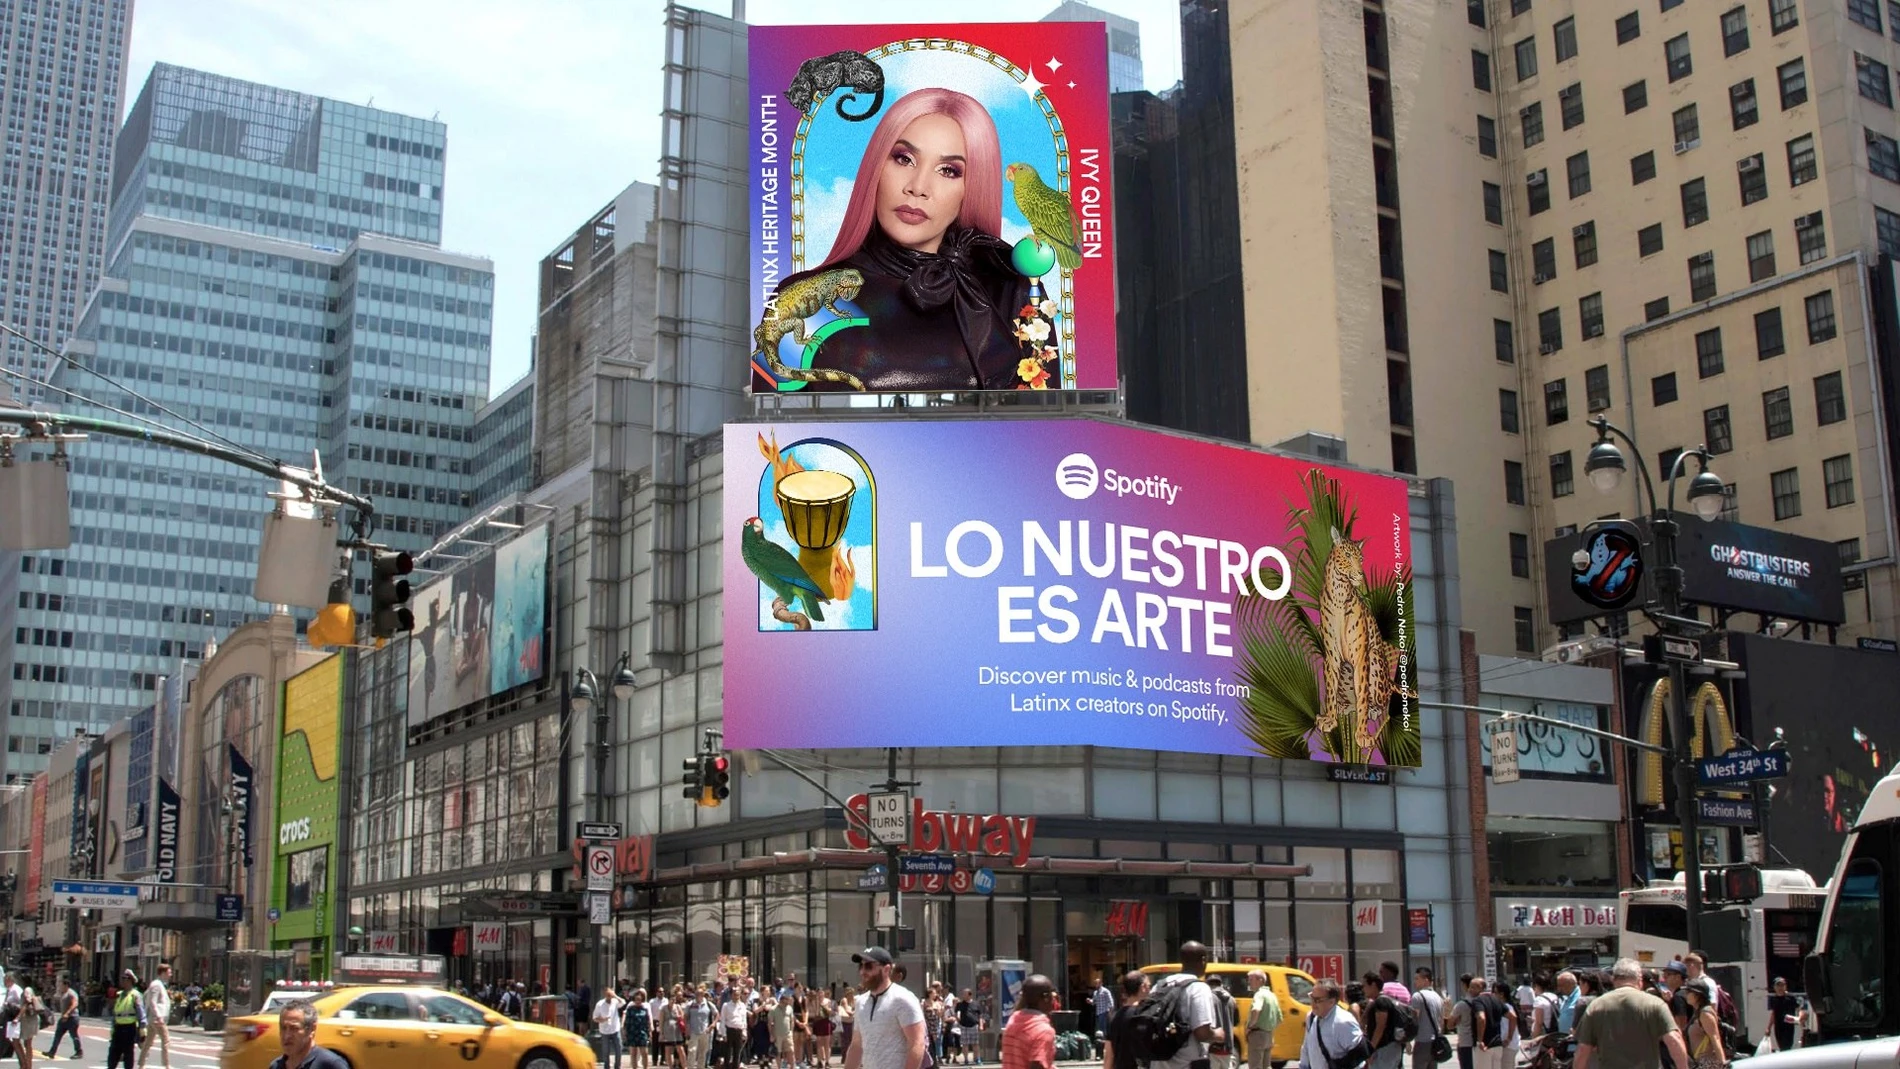 Una valla publicitaria en Nueva York de Spotify que homenajea a la cultura latina en EEUU